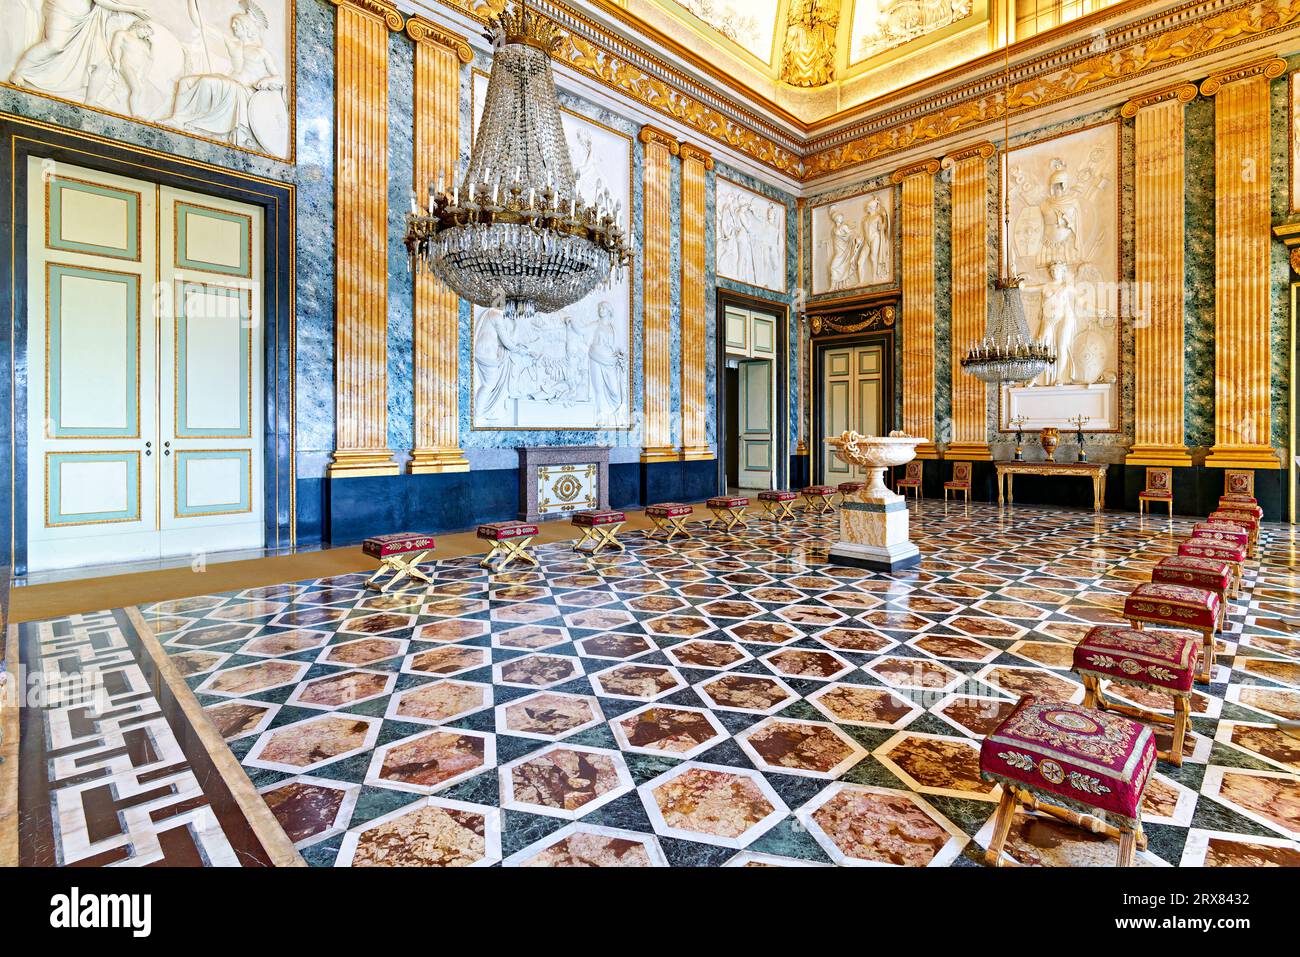 Caserta Campania Italy. The Royal Palace. The Hall of Mars Stock Photo